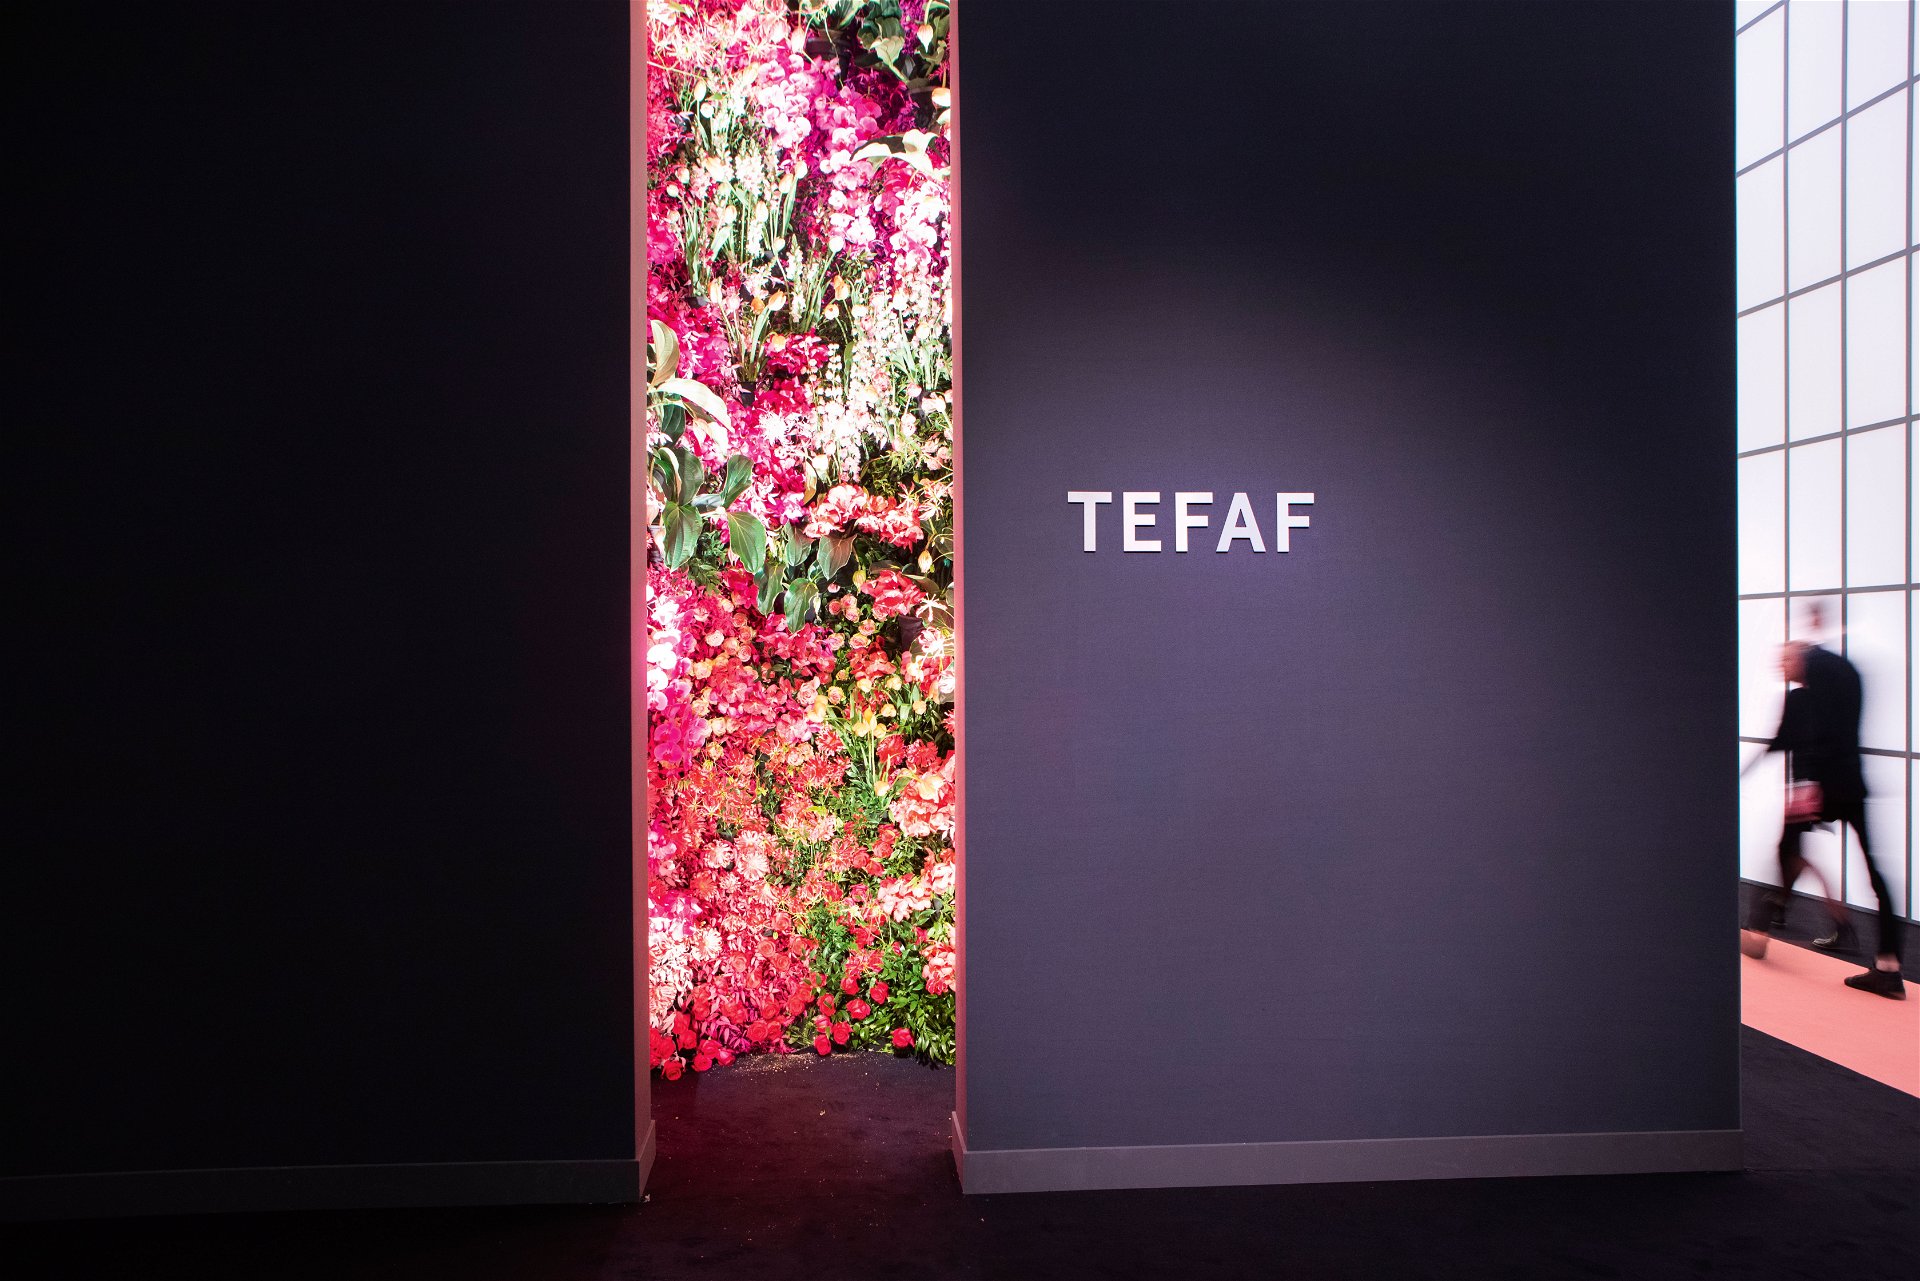 Mehr Kunst geht nicht: Die TEFAF, The European Fine Art Fair, bringt jedes Jahr die gesamte Kunstwelt ins beschauliche Maastricht.